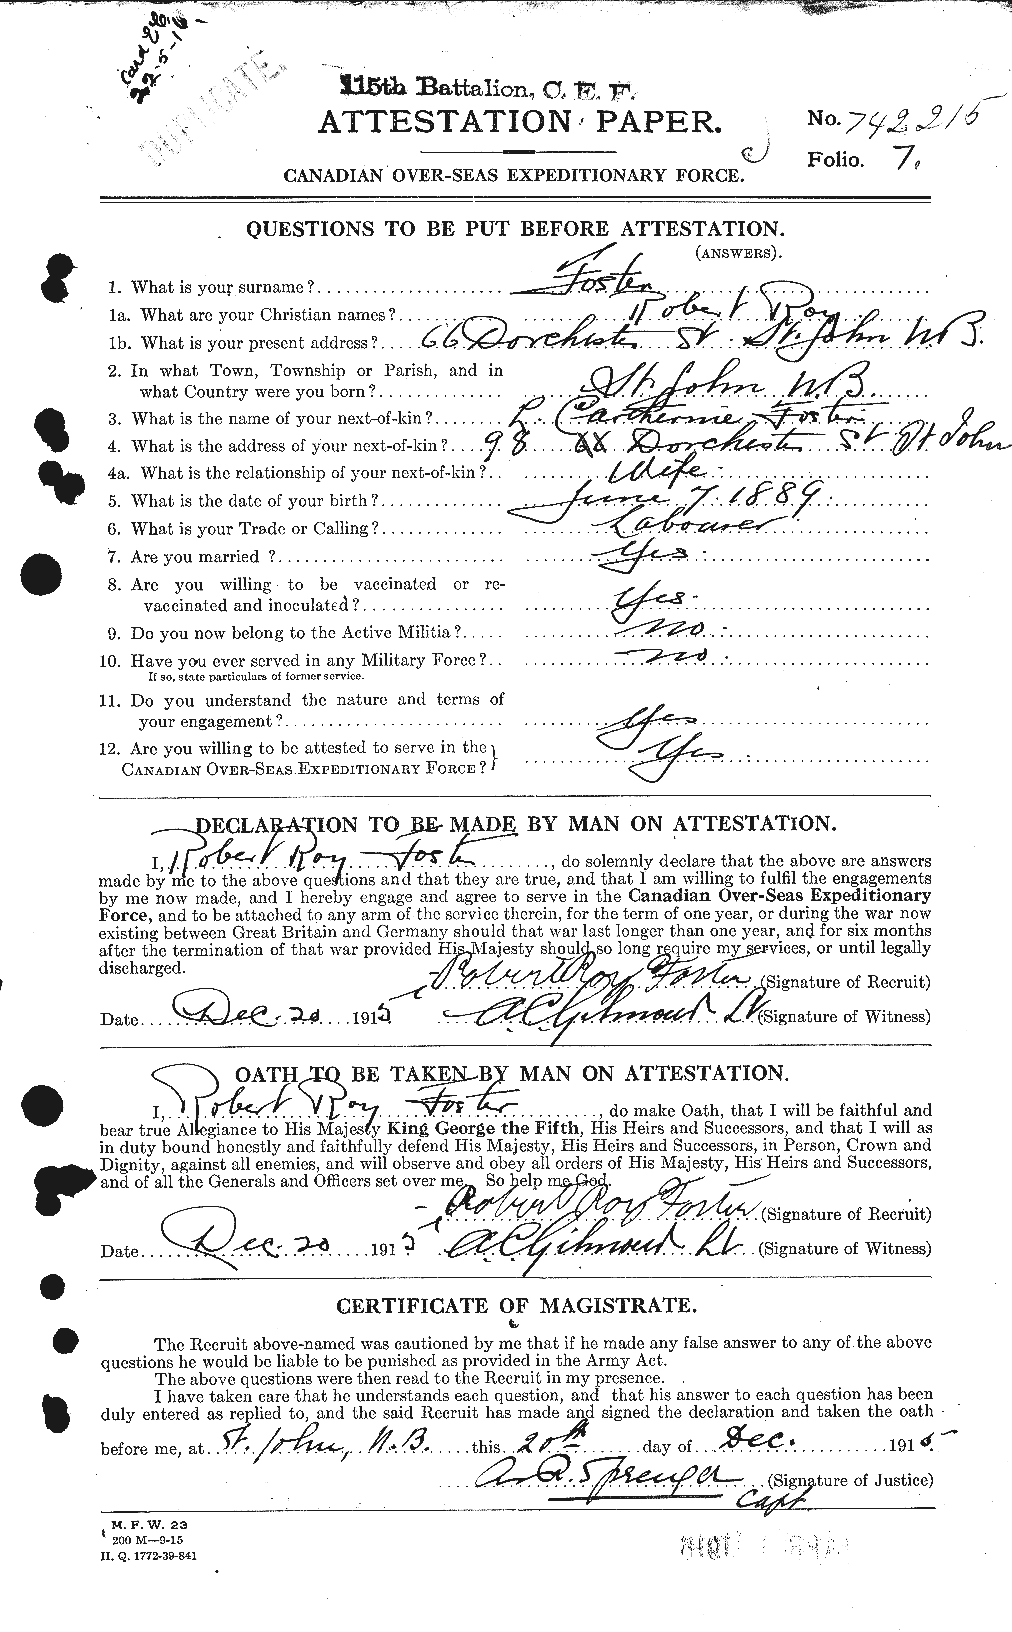 Dossiers du Personnel de la Première Guerre mondiale - CEC 335186a